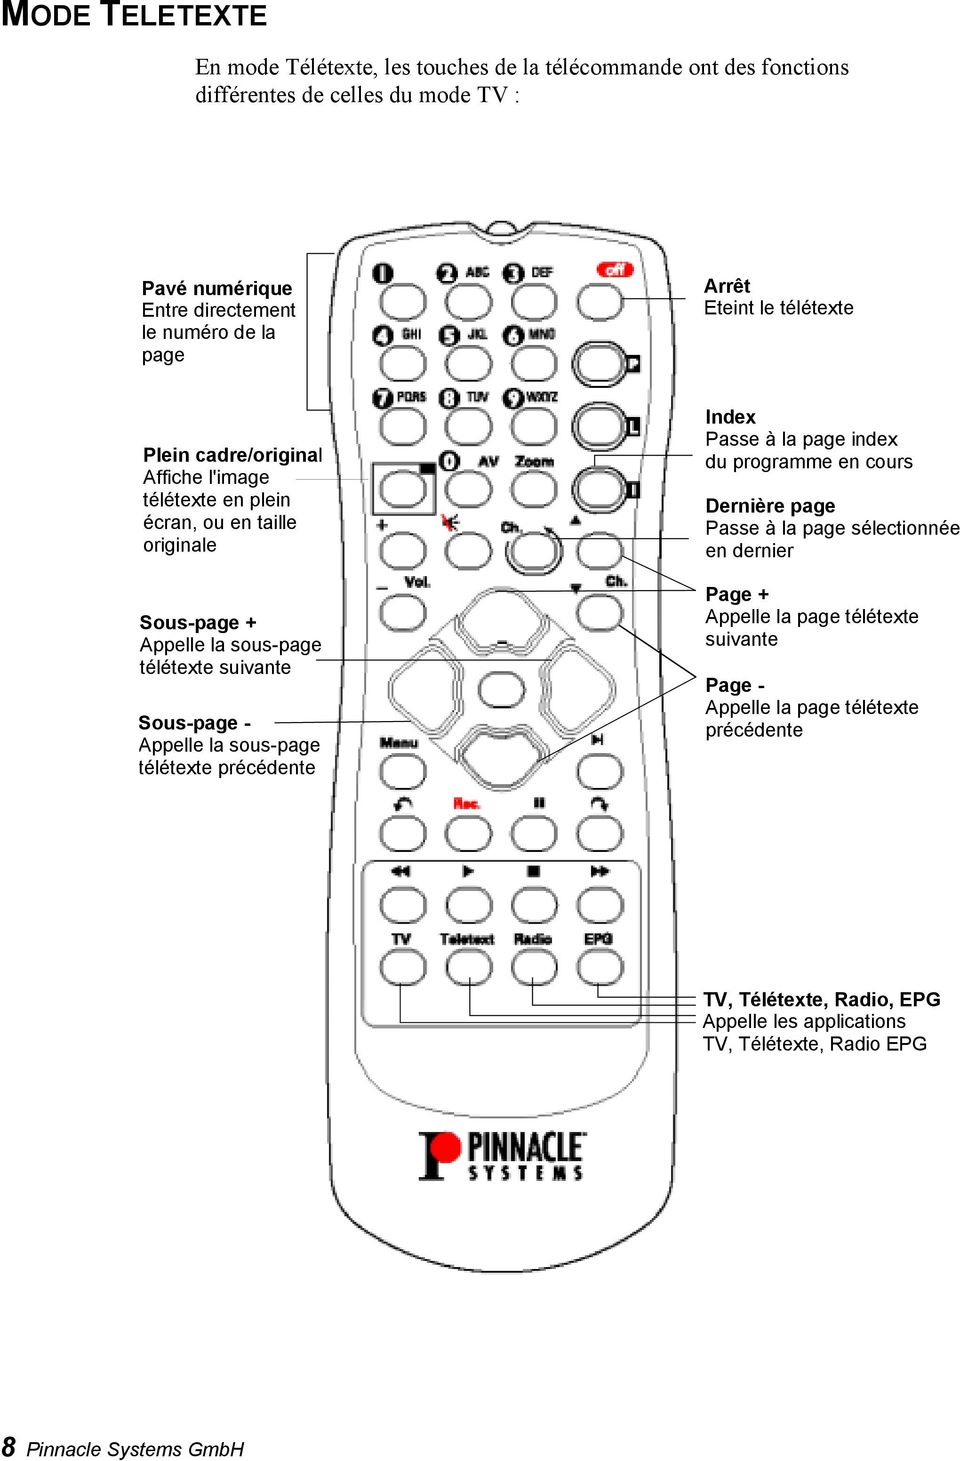 Pinnacle PCTV TELECOMMANDE - PDF Téléchargement Gratuit